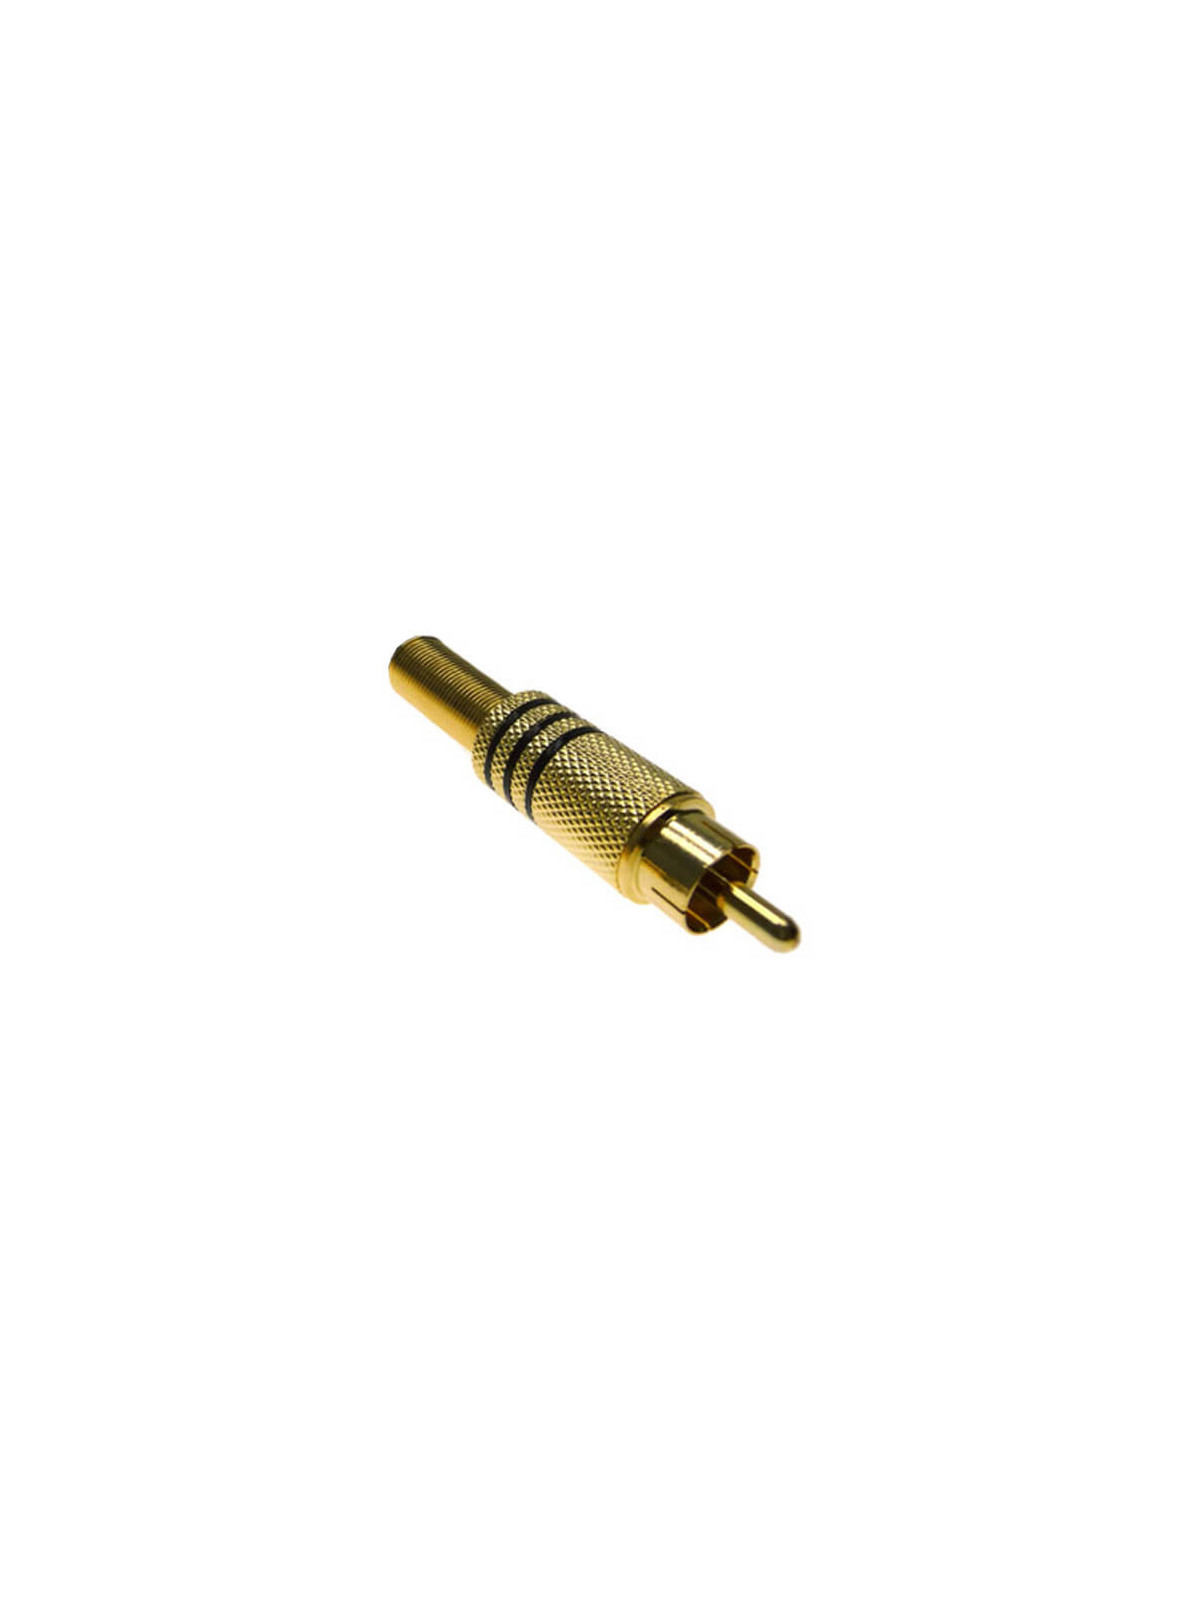 Conector RCA macho dorado con muelle 6mm